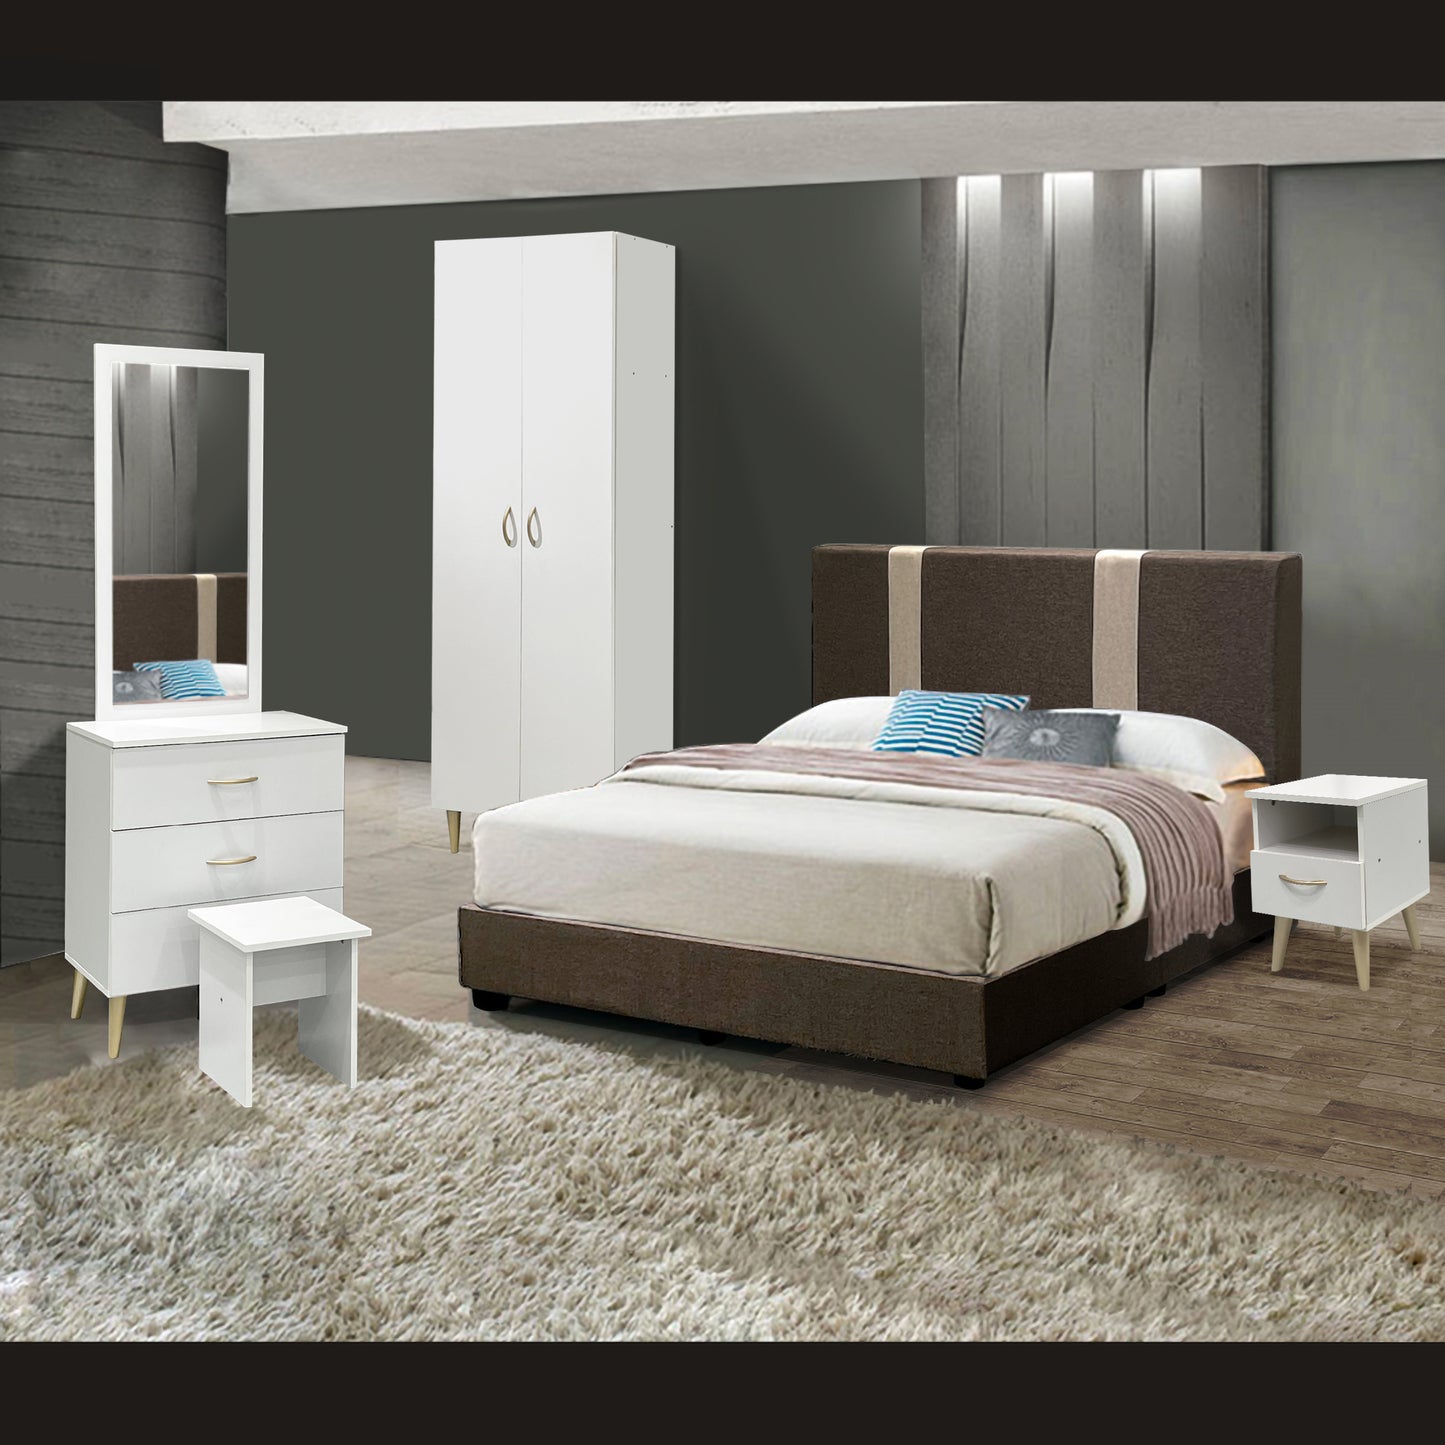 Inari Bedroom set - Queen Bedframe + 2 Doors Wardrobe + Dressing Table & Stool